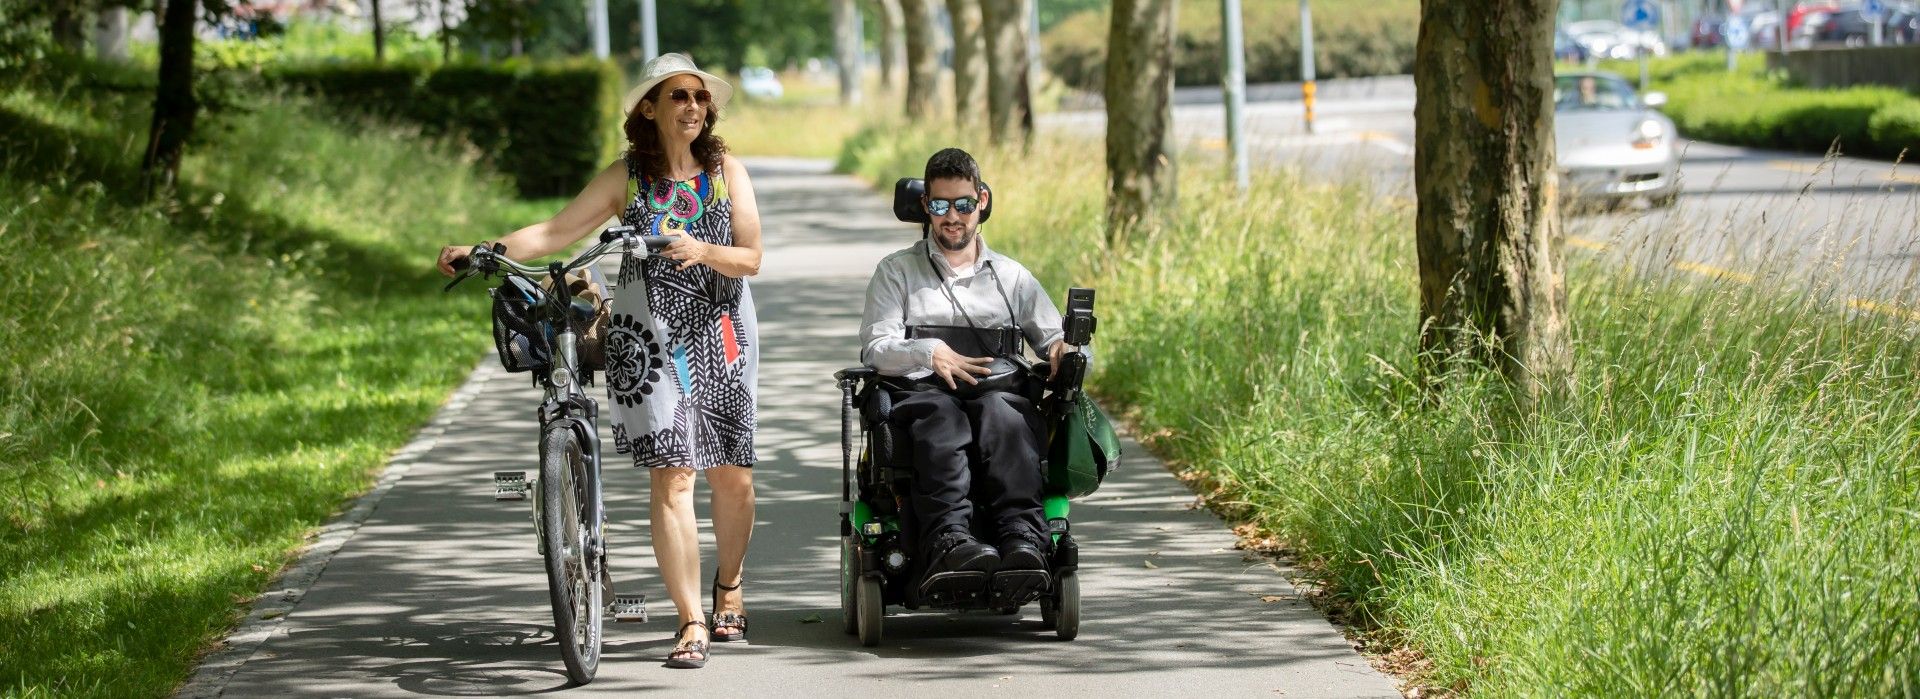 Un jeune homme en fauteuil roulant est accompagné d'une femme à vélo.